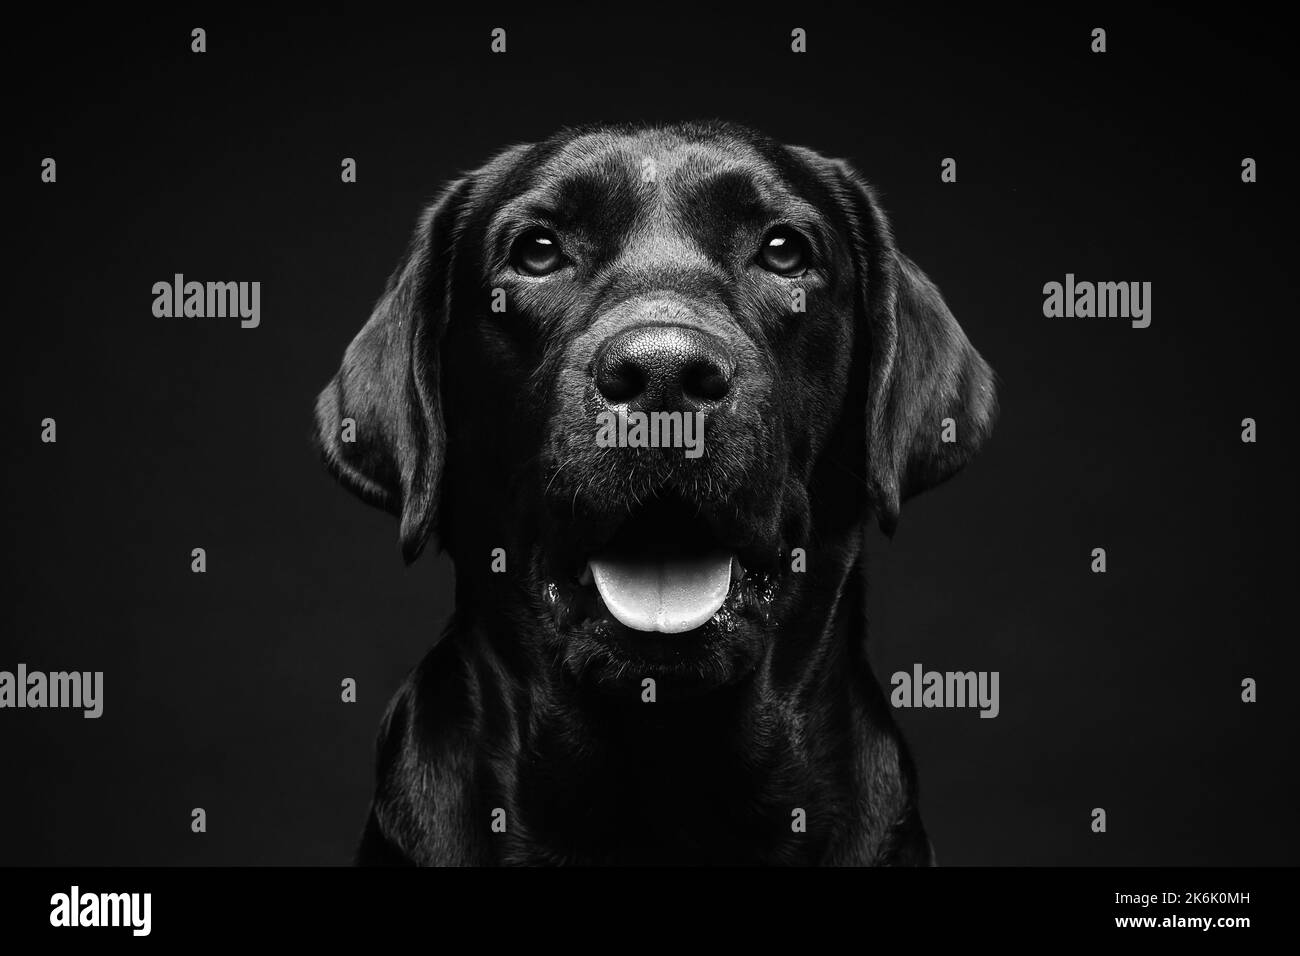 Ritratto di un cane Labrador Retriever su uno sfondo nero isolato. La foto è stata scattata in uno studio fotografico. Foto Stock